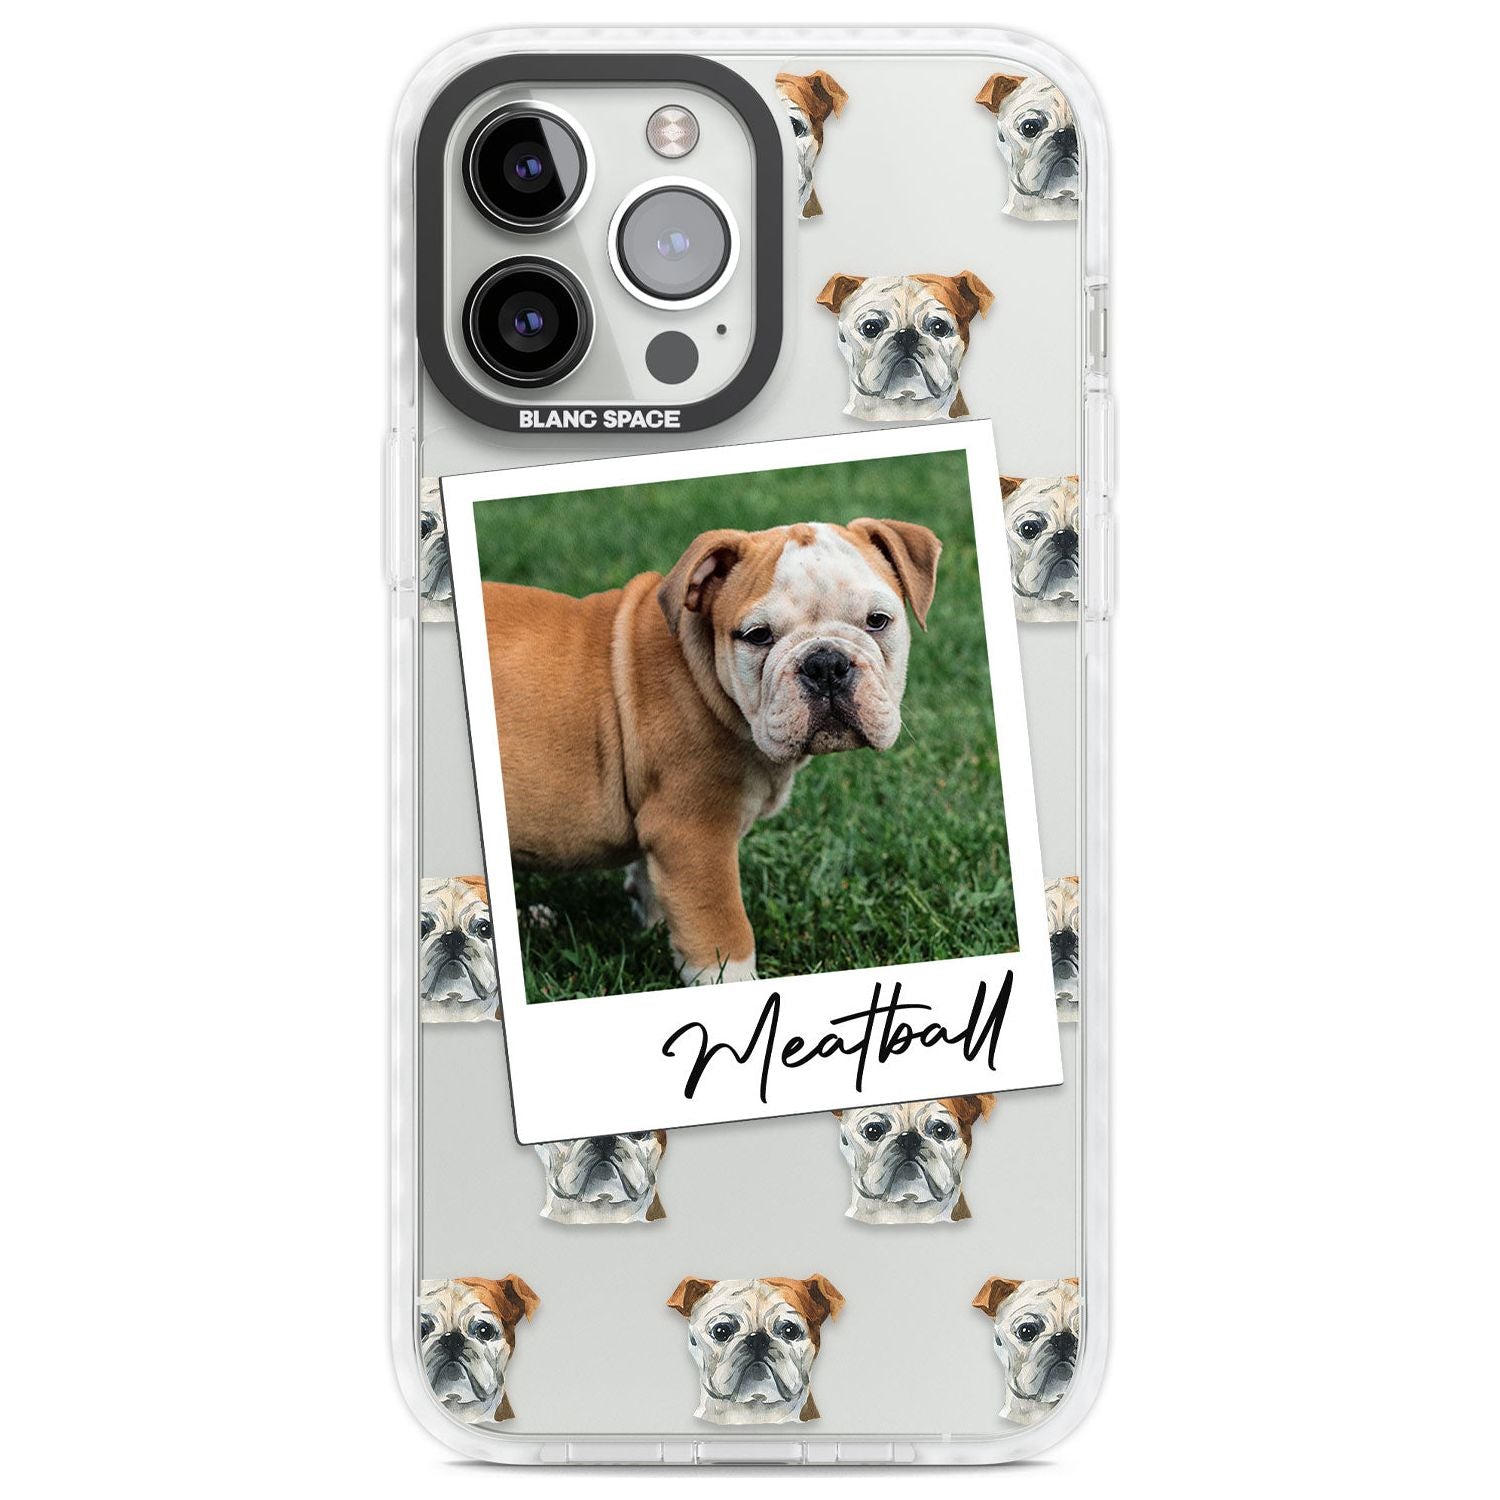 Personalised English Bulldog - Dog Photo Custom Phone Case iPhone 13 Pro Max / Impact Case,iPhone 14 Pro Max / Impact Case Blanc Space